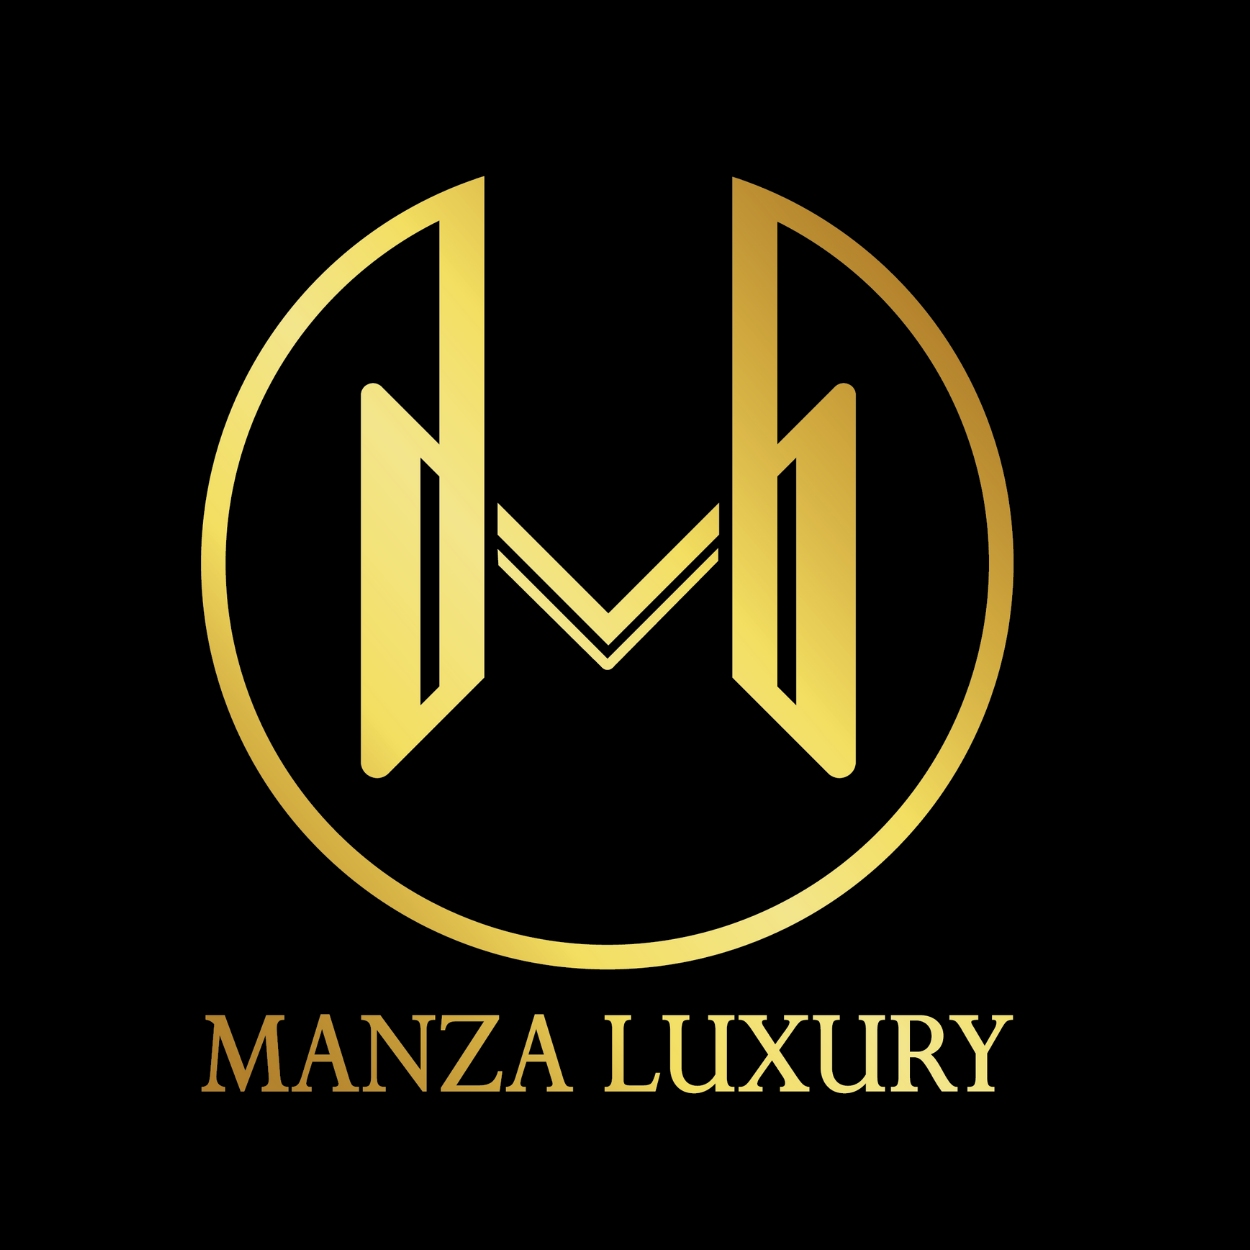 Manza Luxury